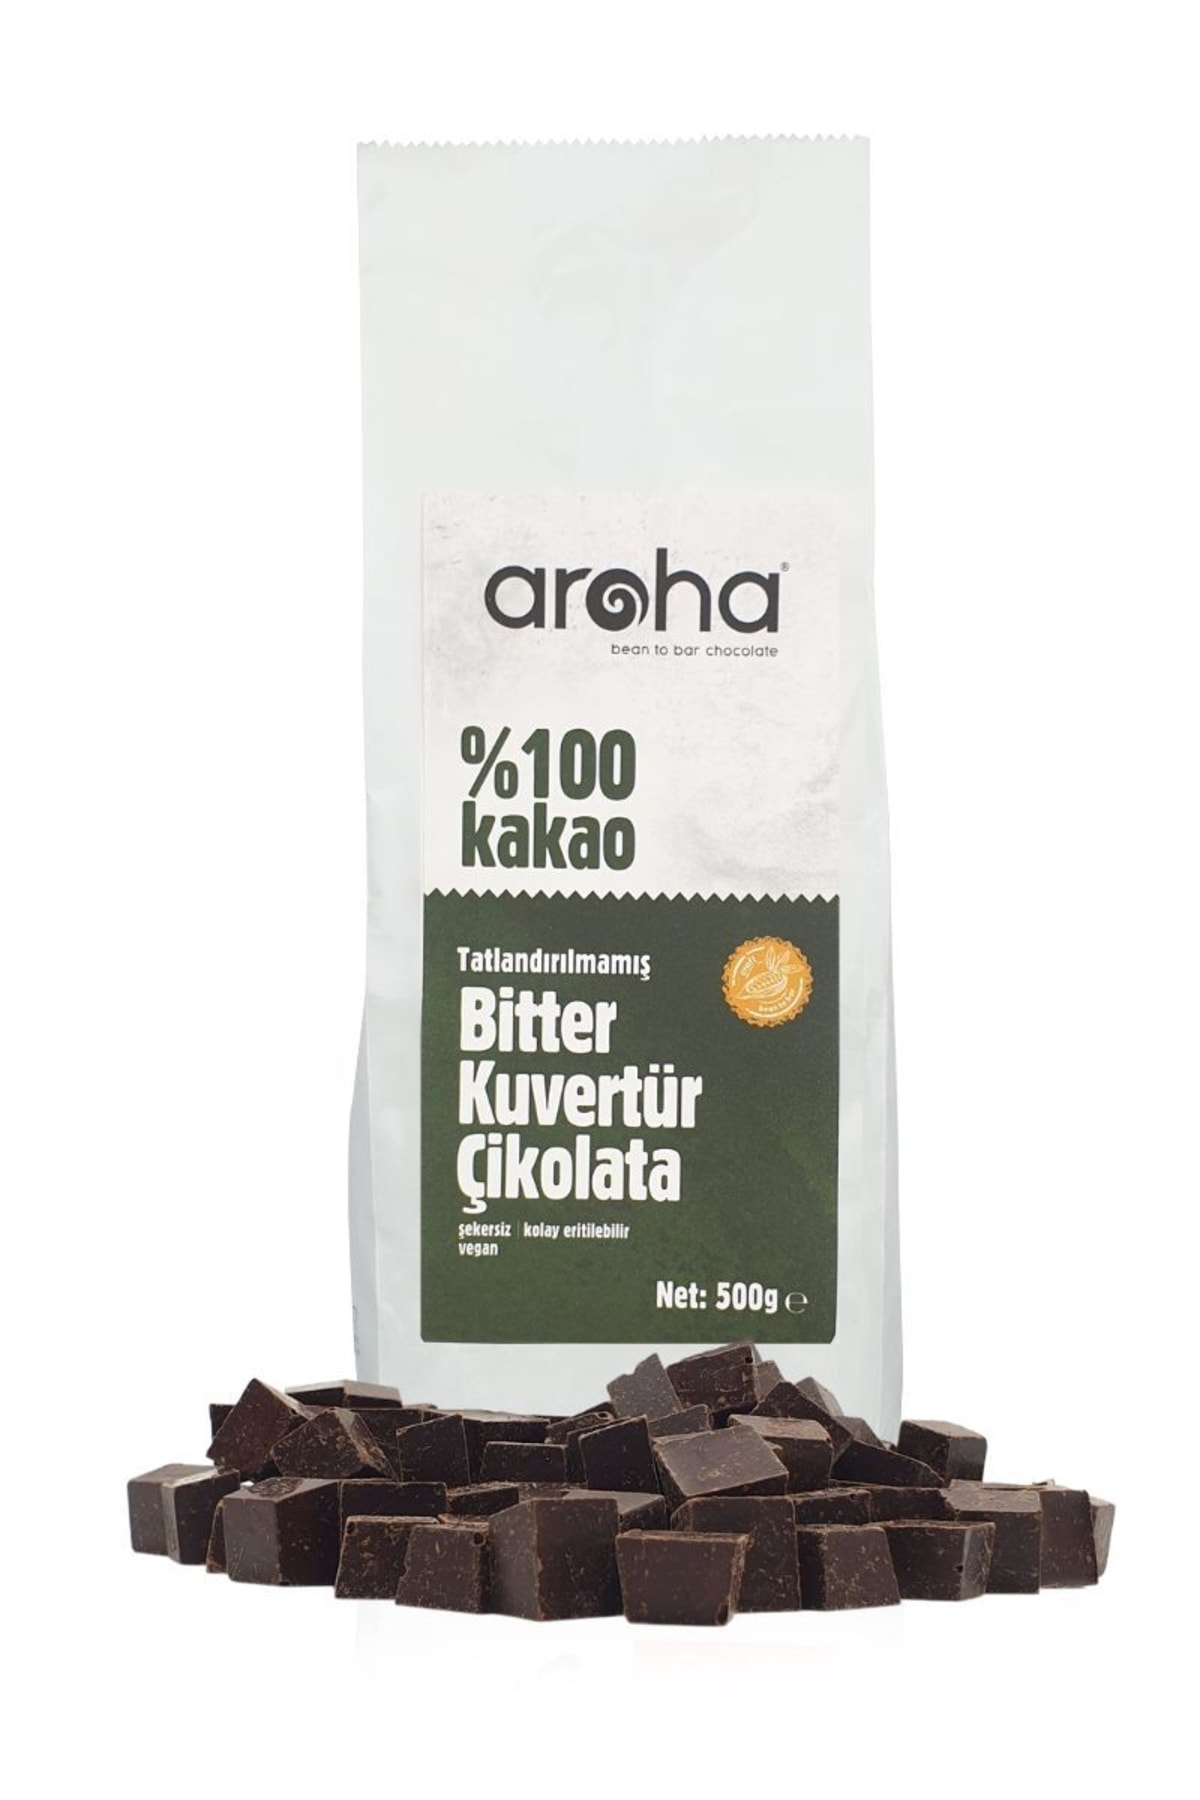 AROHA %100 Kakao - Şekersiz Glutensiz Vegan Tatlandırılmamış Bitter Çikolata Kuvertürü (500 GR.)